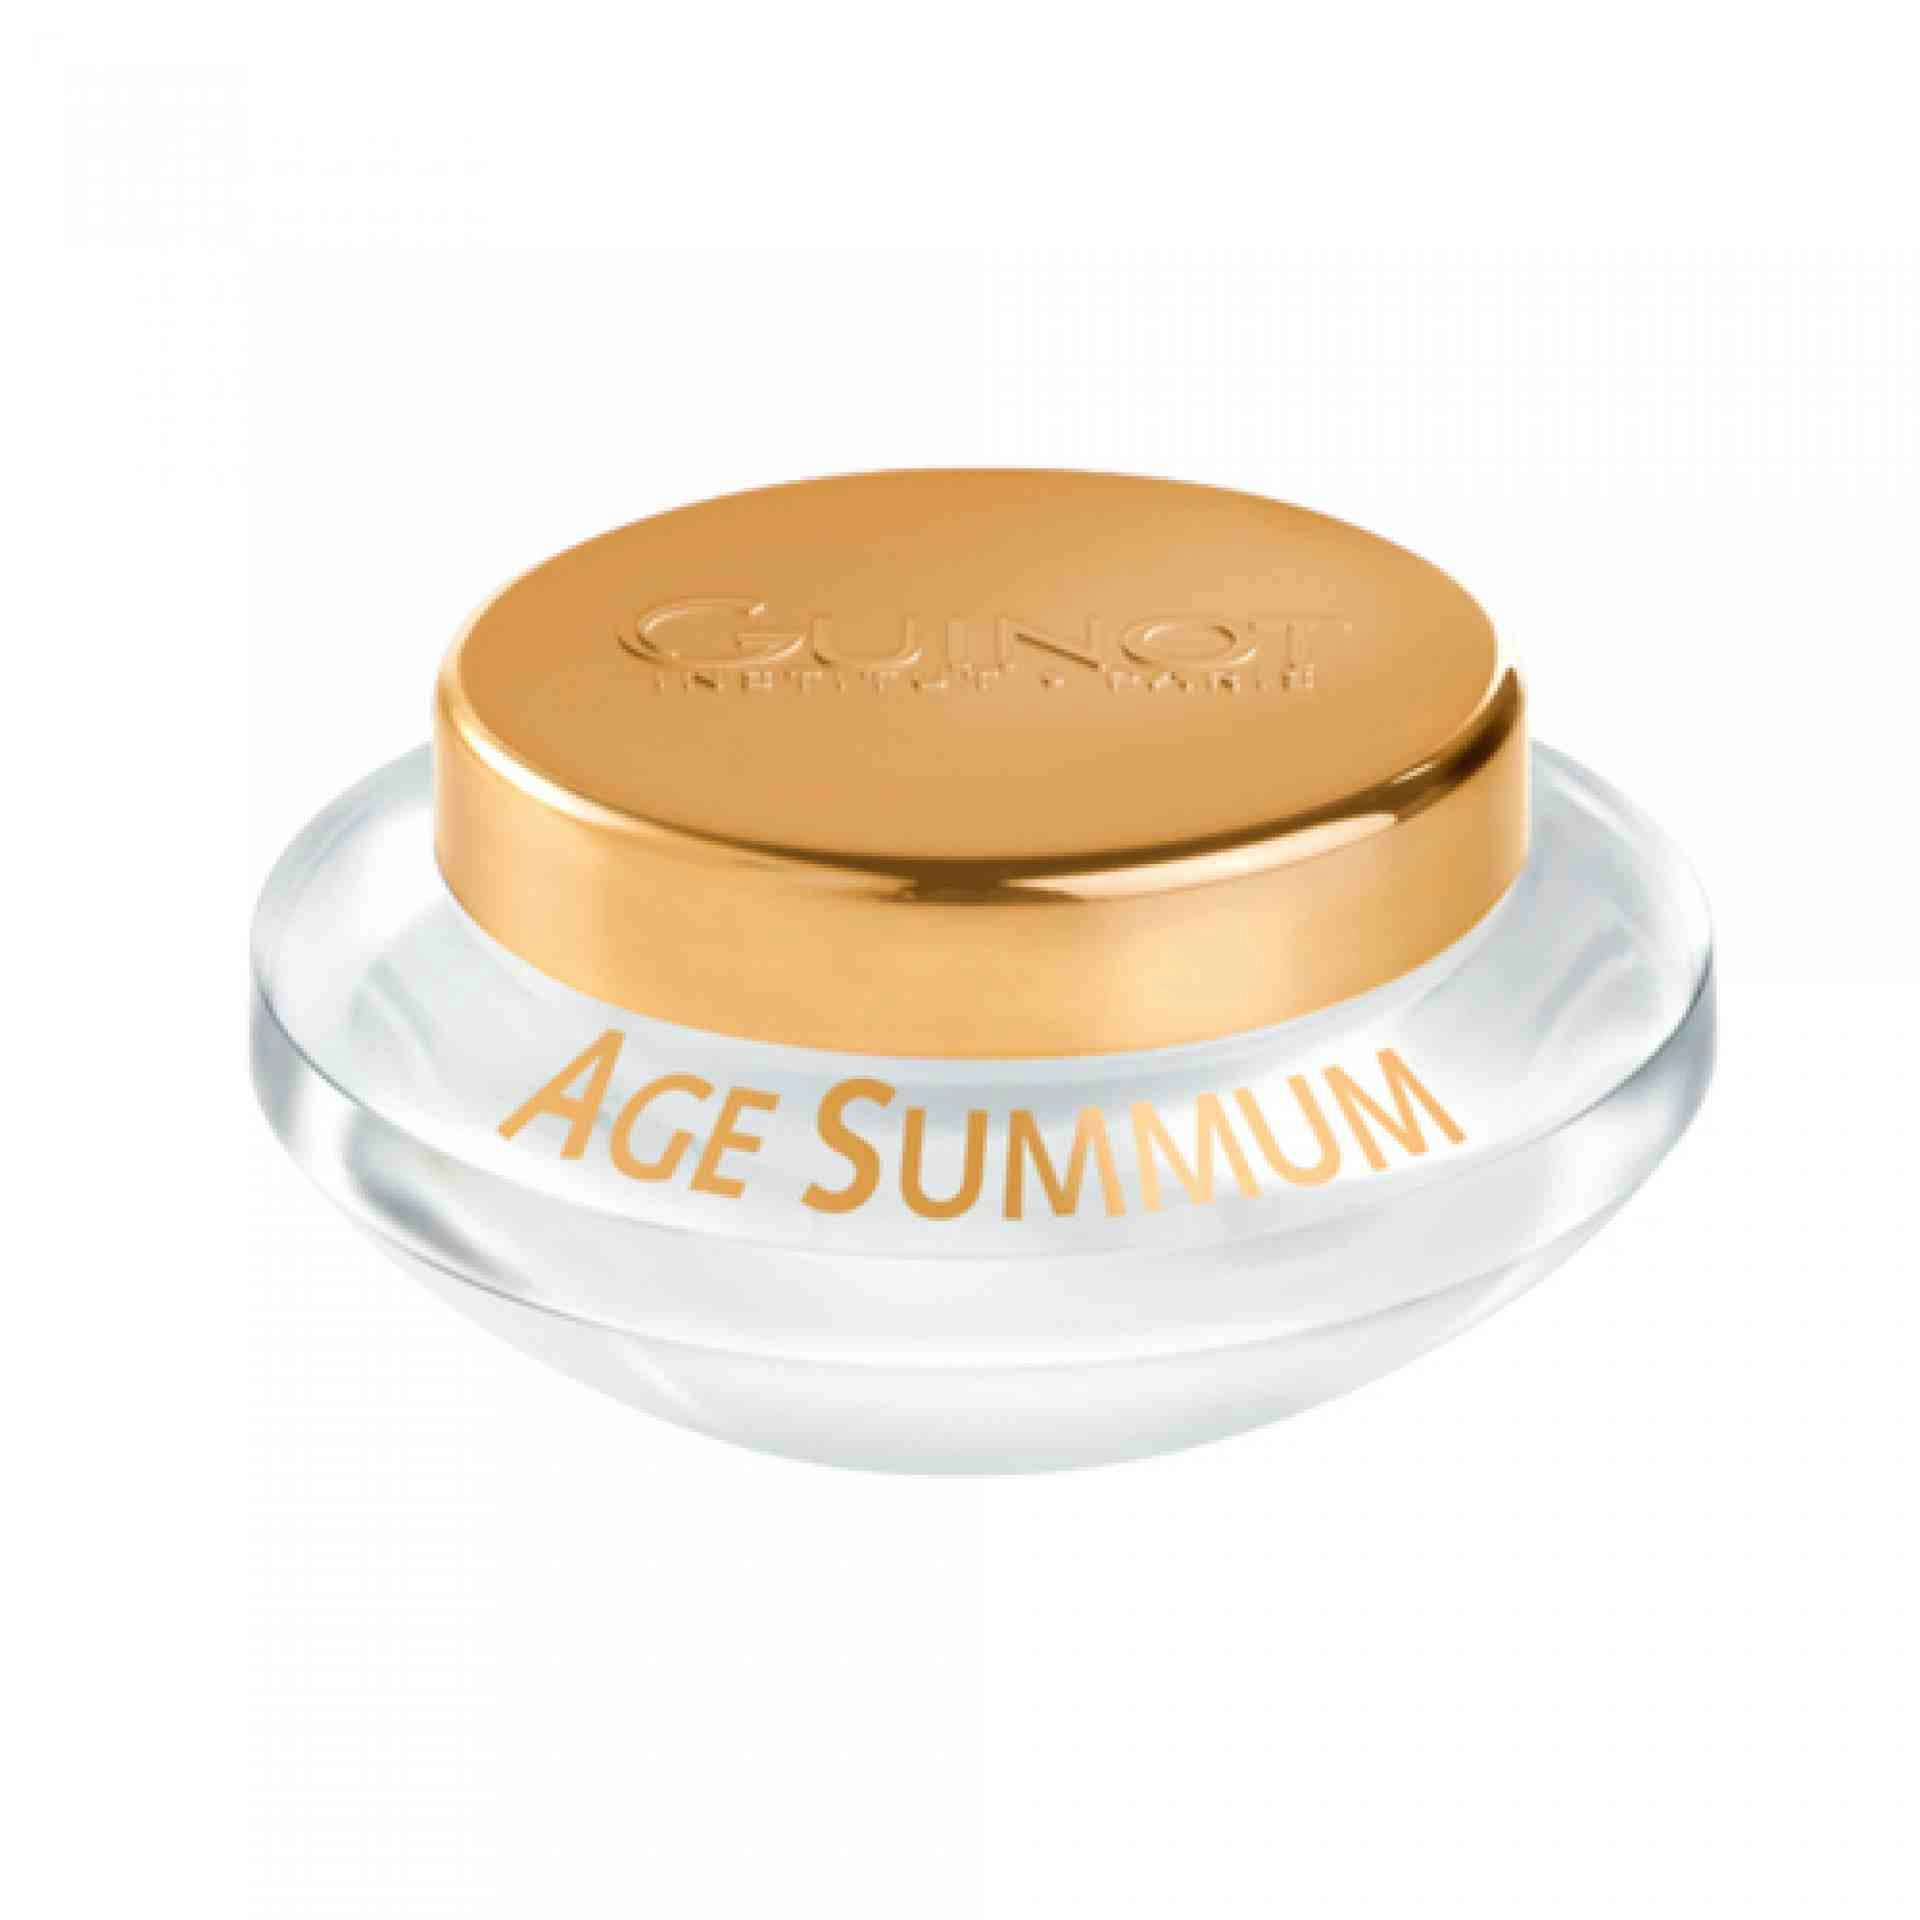 Crème Age Summum | Crema Antiedad 50ml - Guinot ®